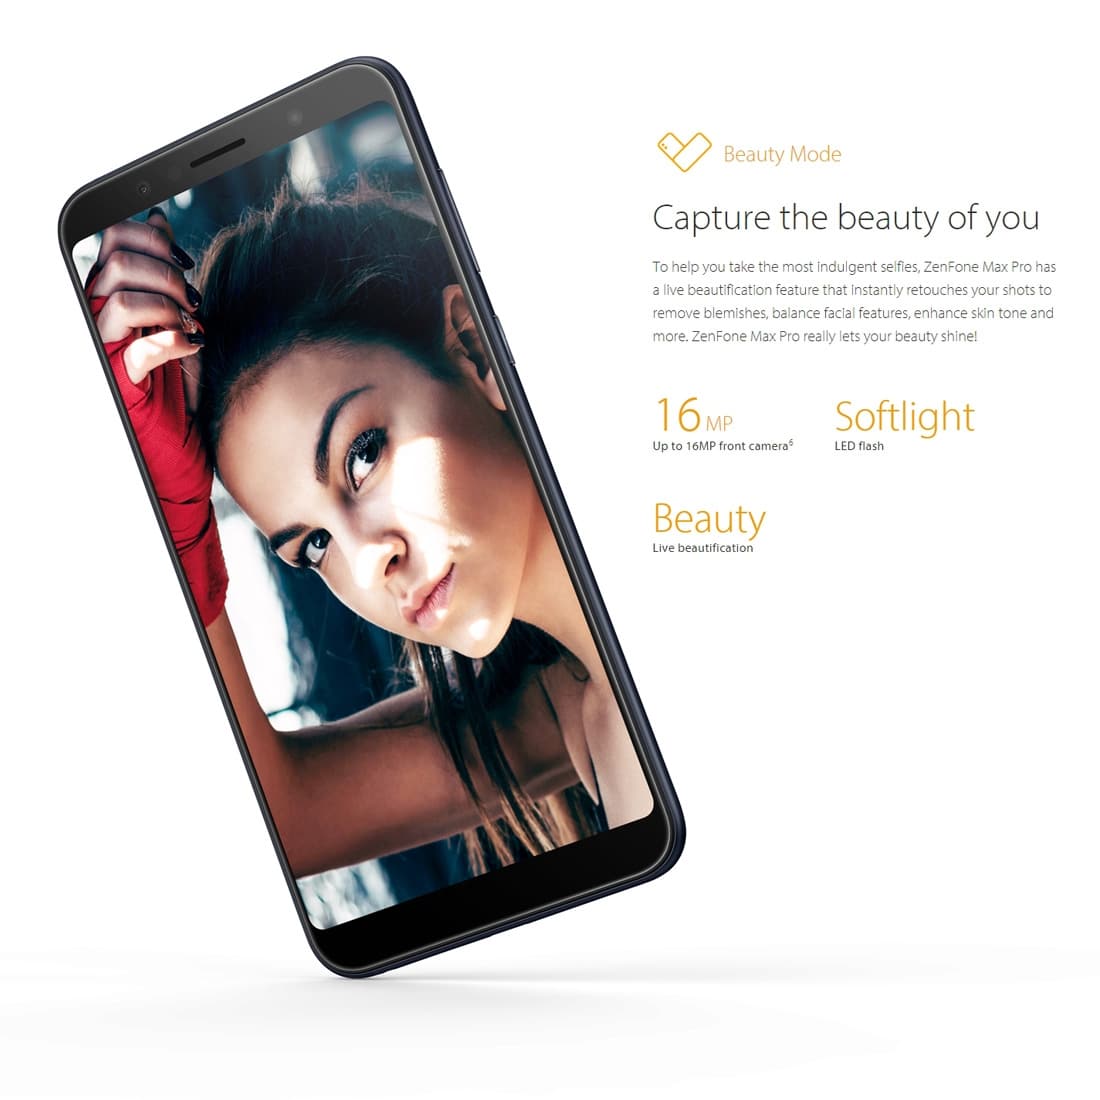 ASUS ZenFone Max Pro Smartphone